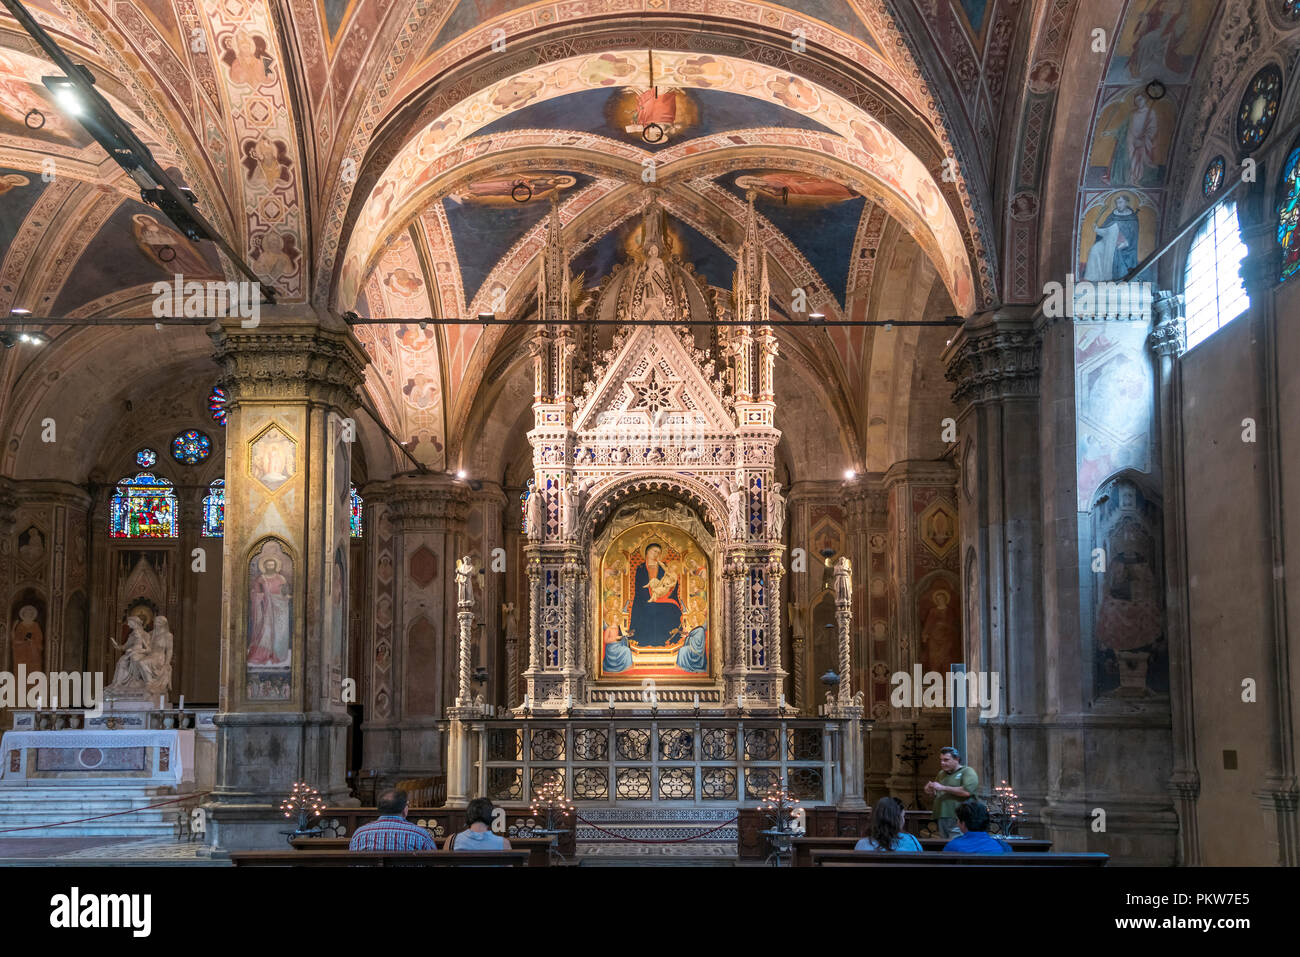 Innenraum der Kirche Orsanmichele, Florenz, Toskana, Italien | église Orsanmichele autel, Florence, Toscane, Italie Banque D'Images